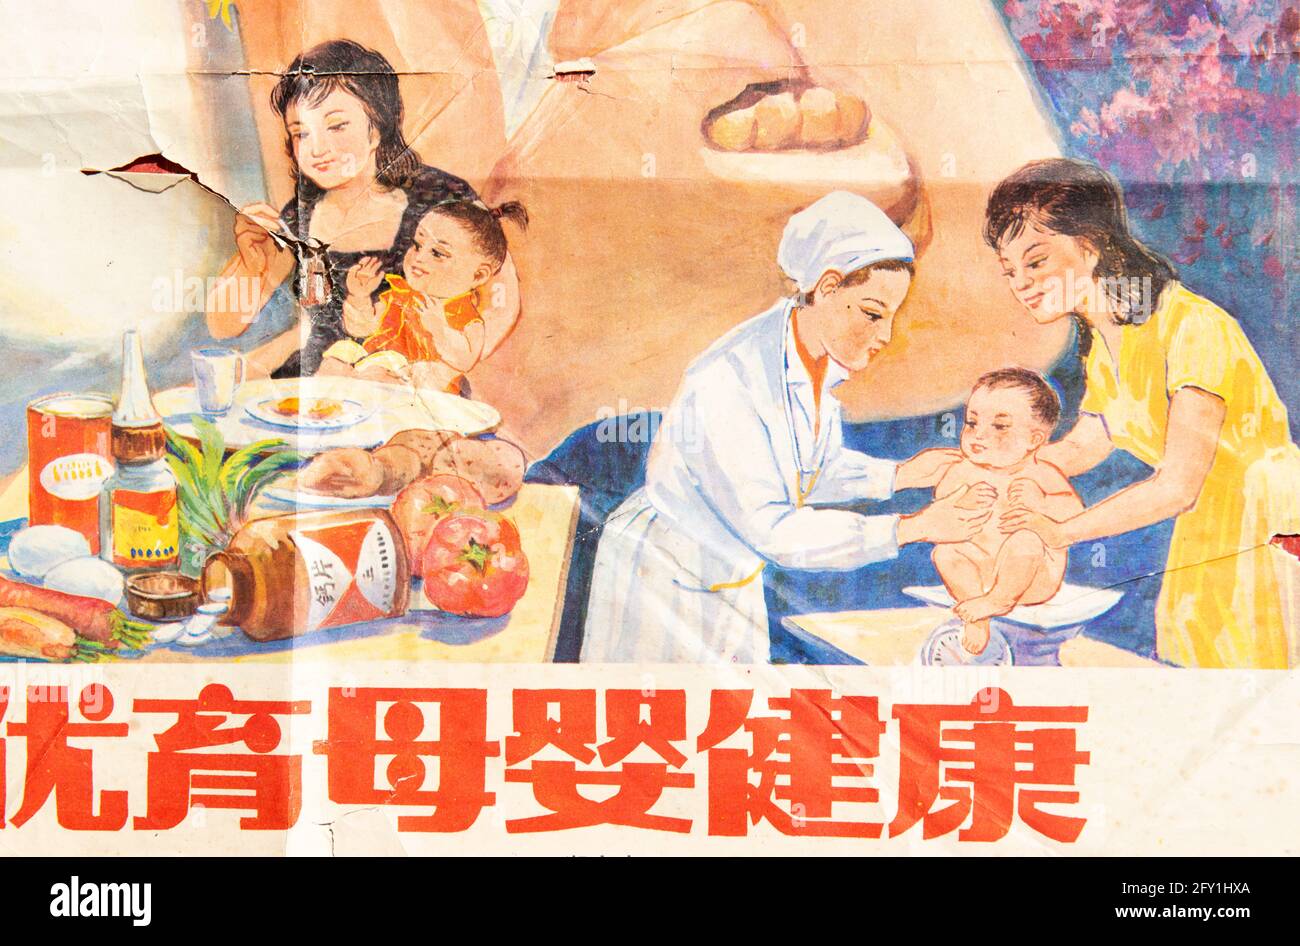 Ein Plakat der ein-Kind-Politik in China in den 1980er Jahren. Chinesische Schriftzeichen bedeuten: ...better Gebären, gesunde Mutter und Baby. Stockfoto